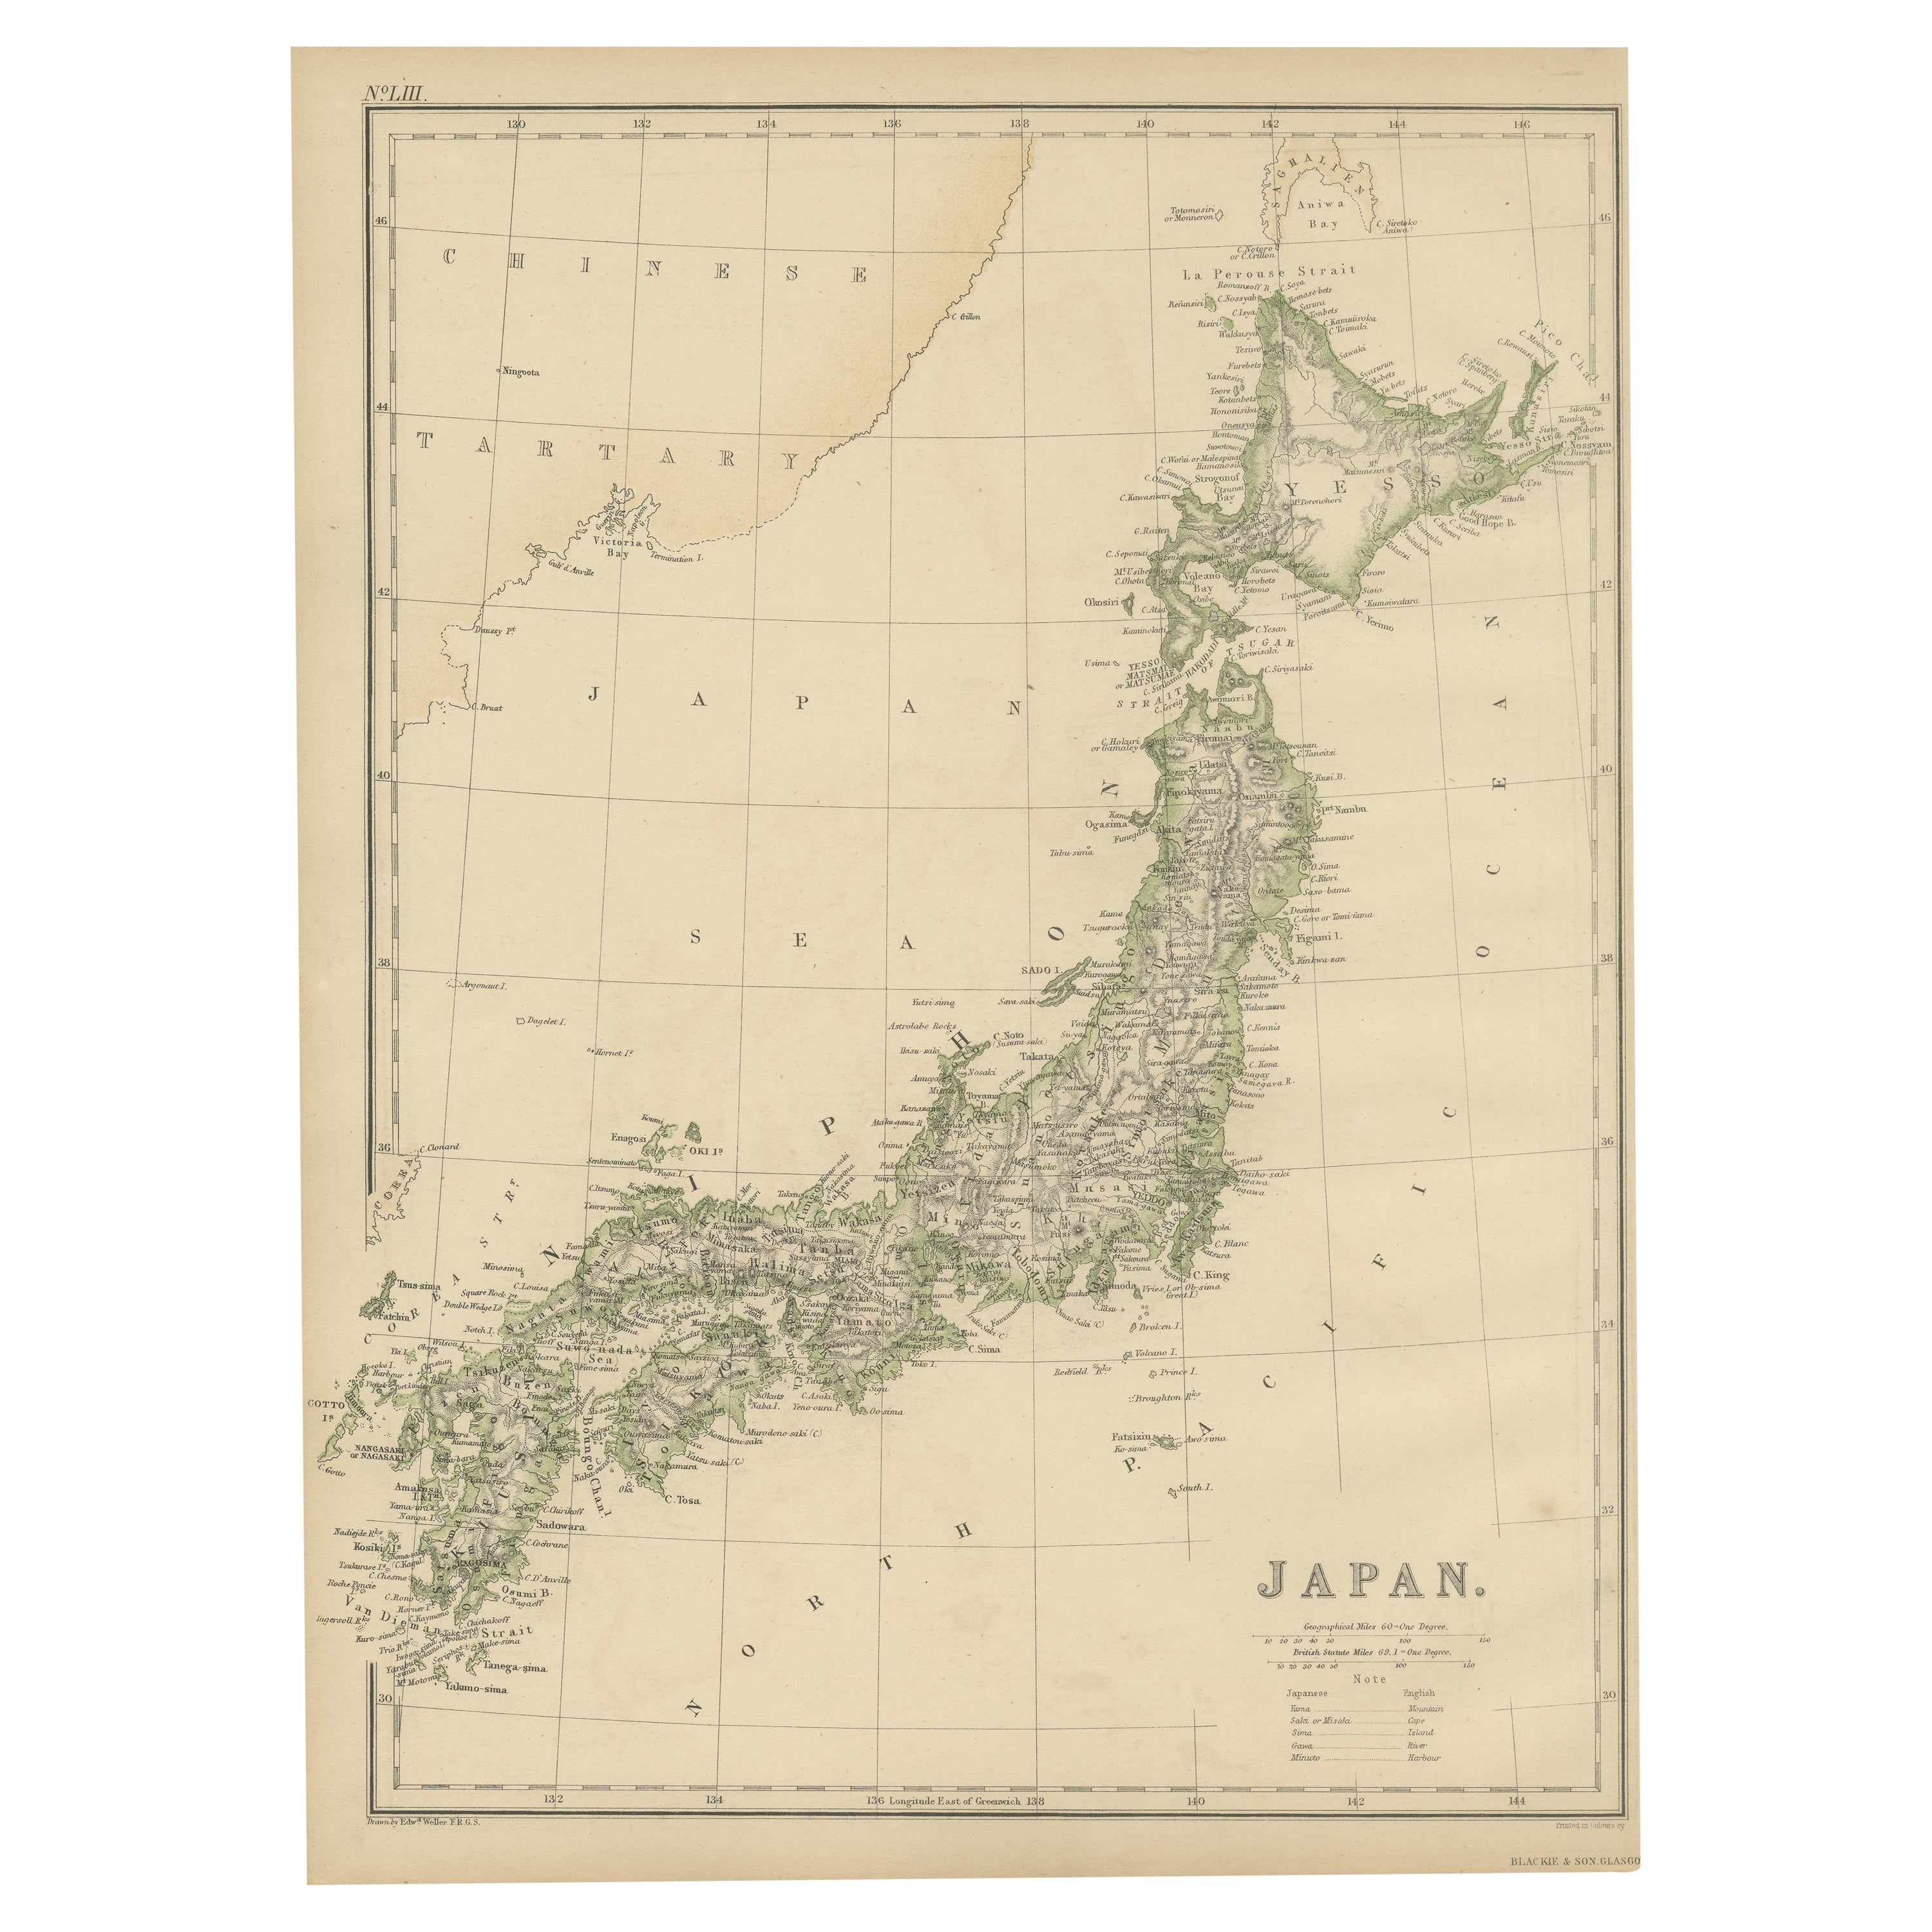 Carte ancienne du Japon par W. G. Blackie, 1859